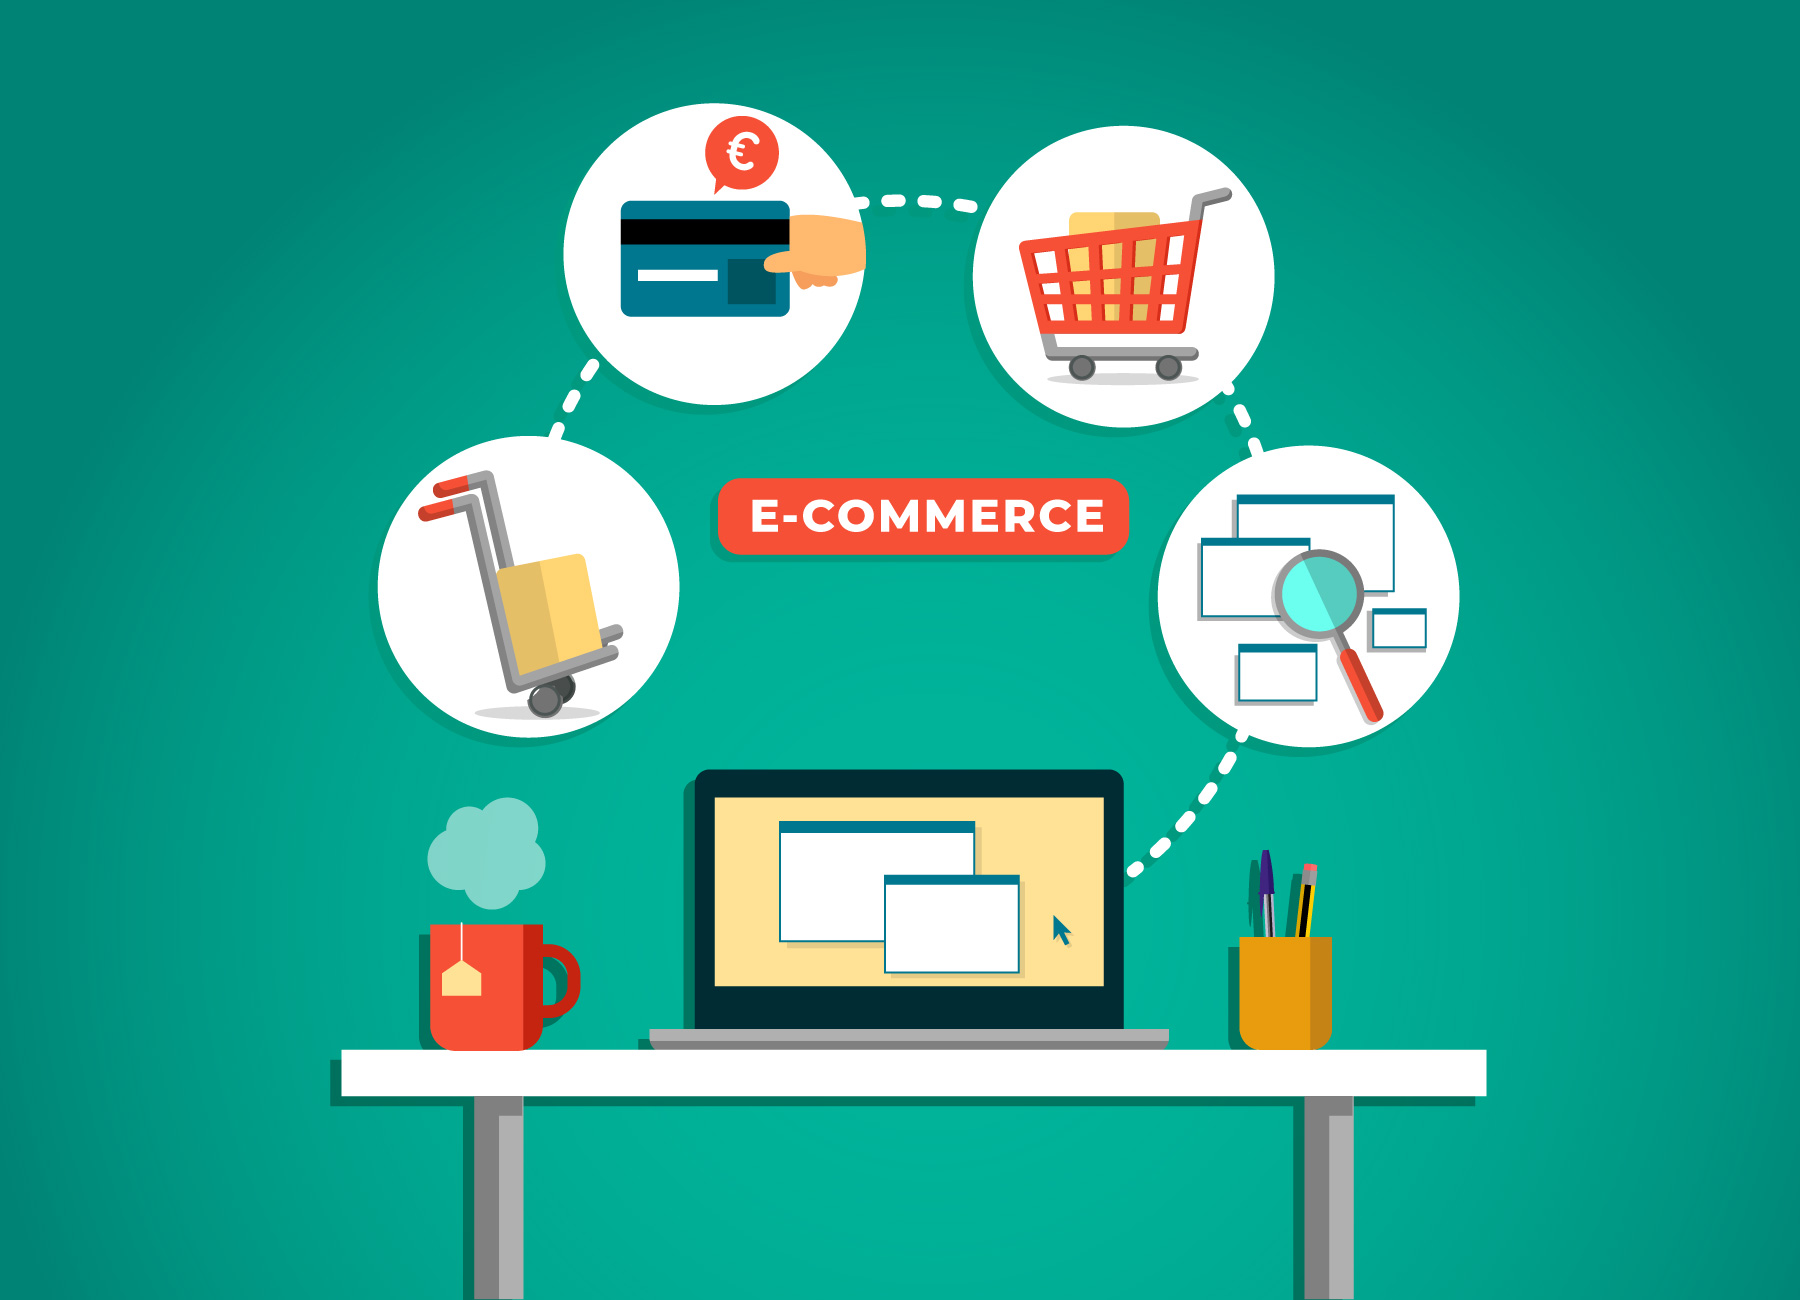 Digital Commerce Applications Market'